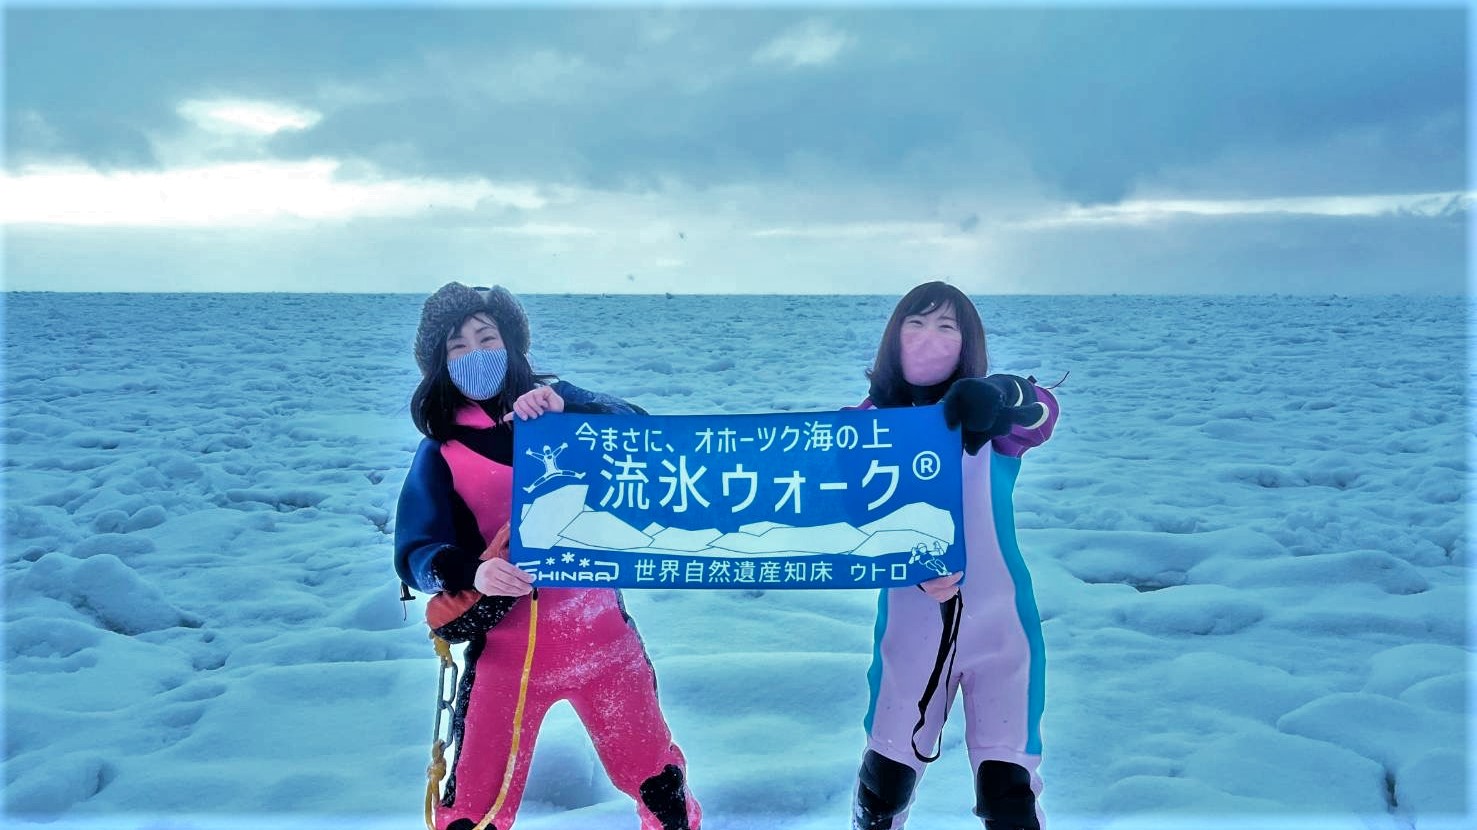 Drift Ice Walking in Hokkaido Japan